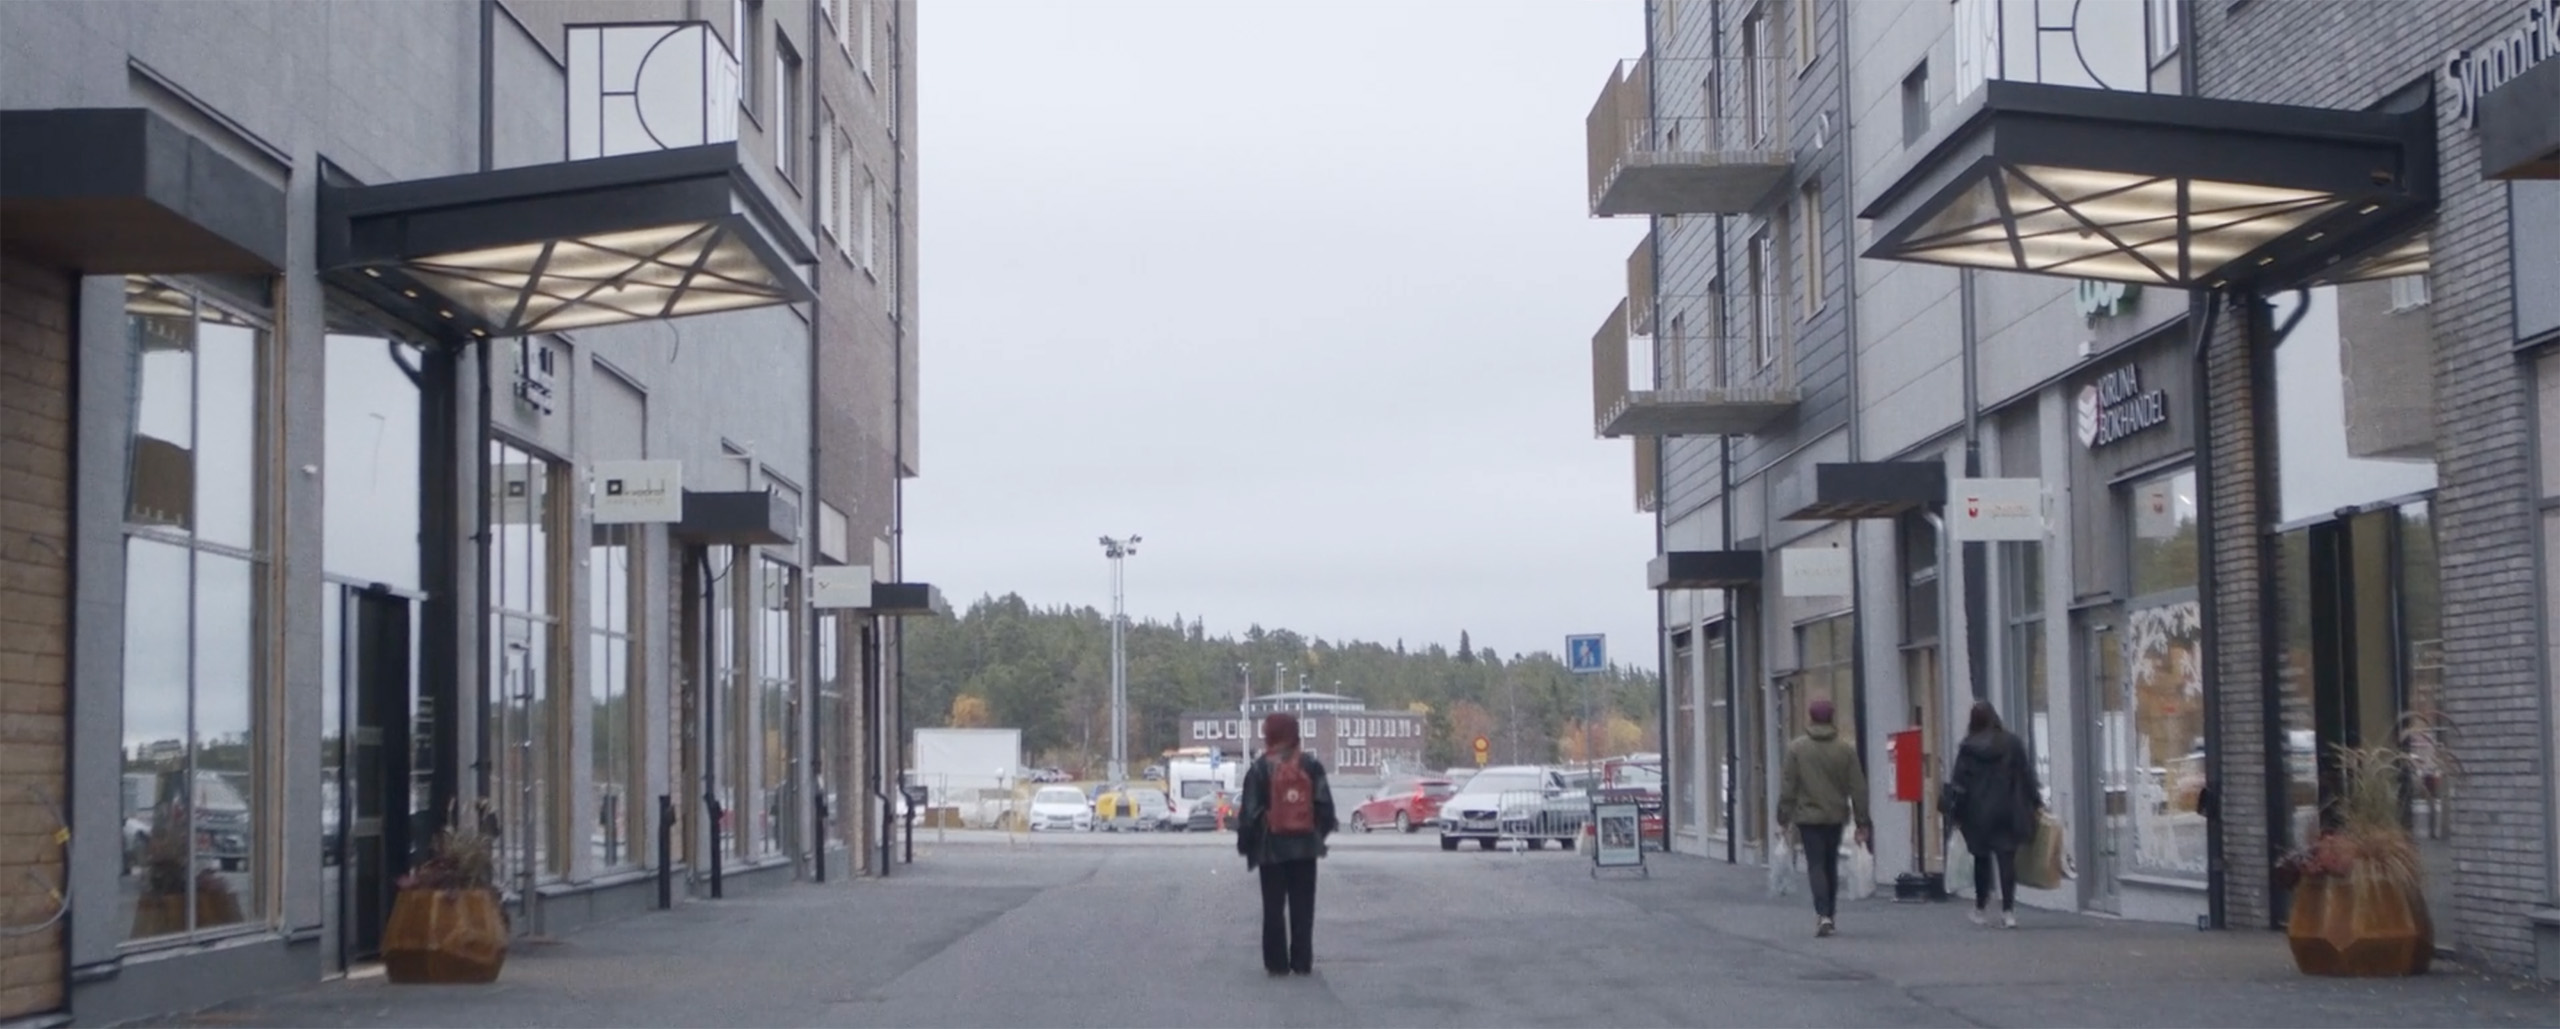 En sista kväll för folkets hus André Larsson Flyborg dokumentär film Kiruna